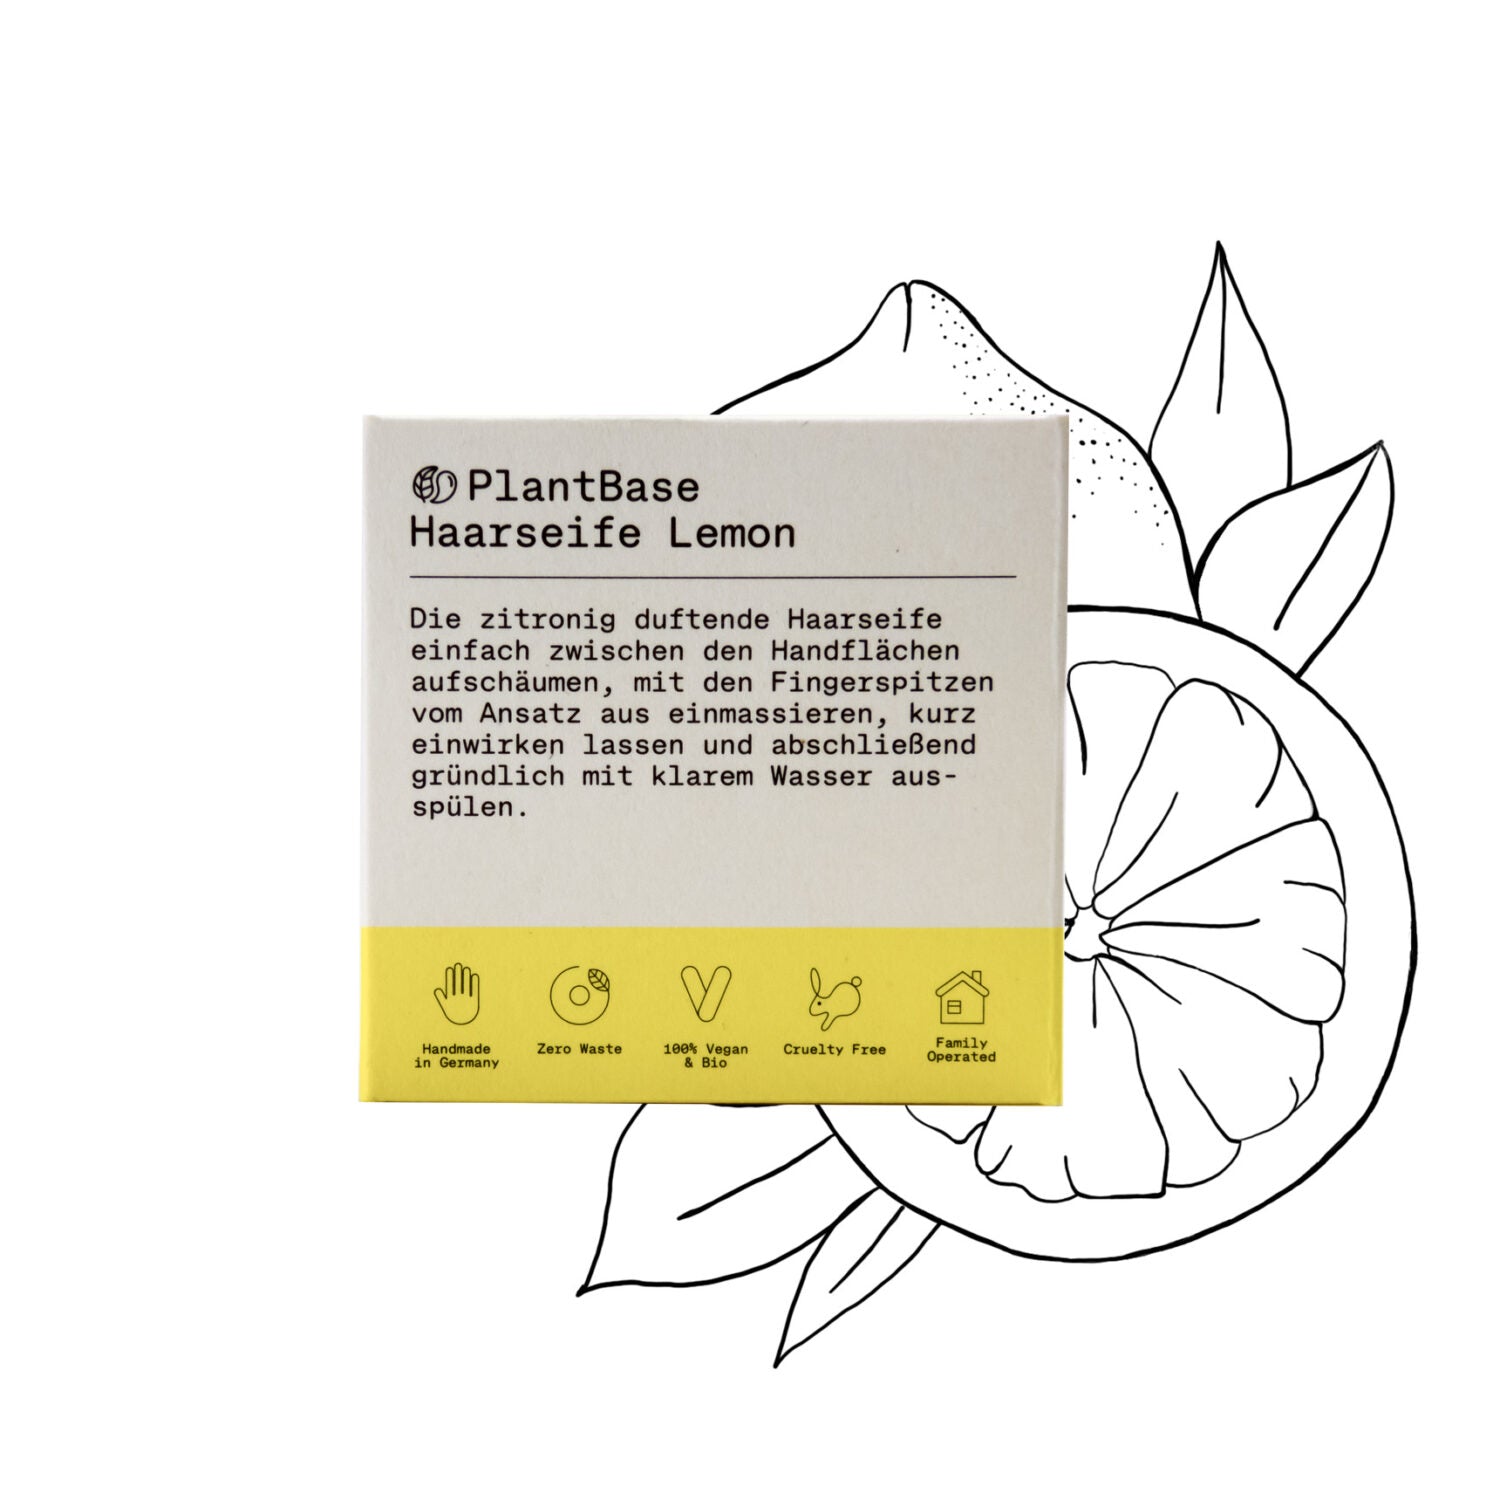 PlantBase_Haarseife_Lemon_1